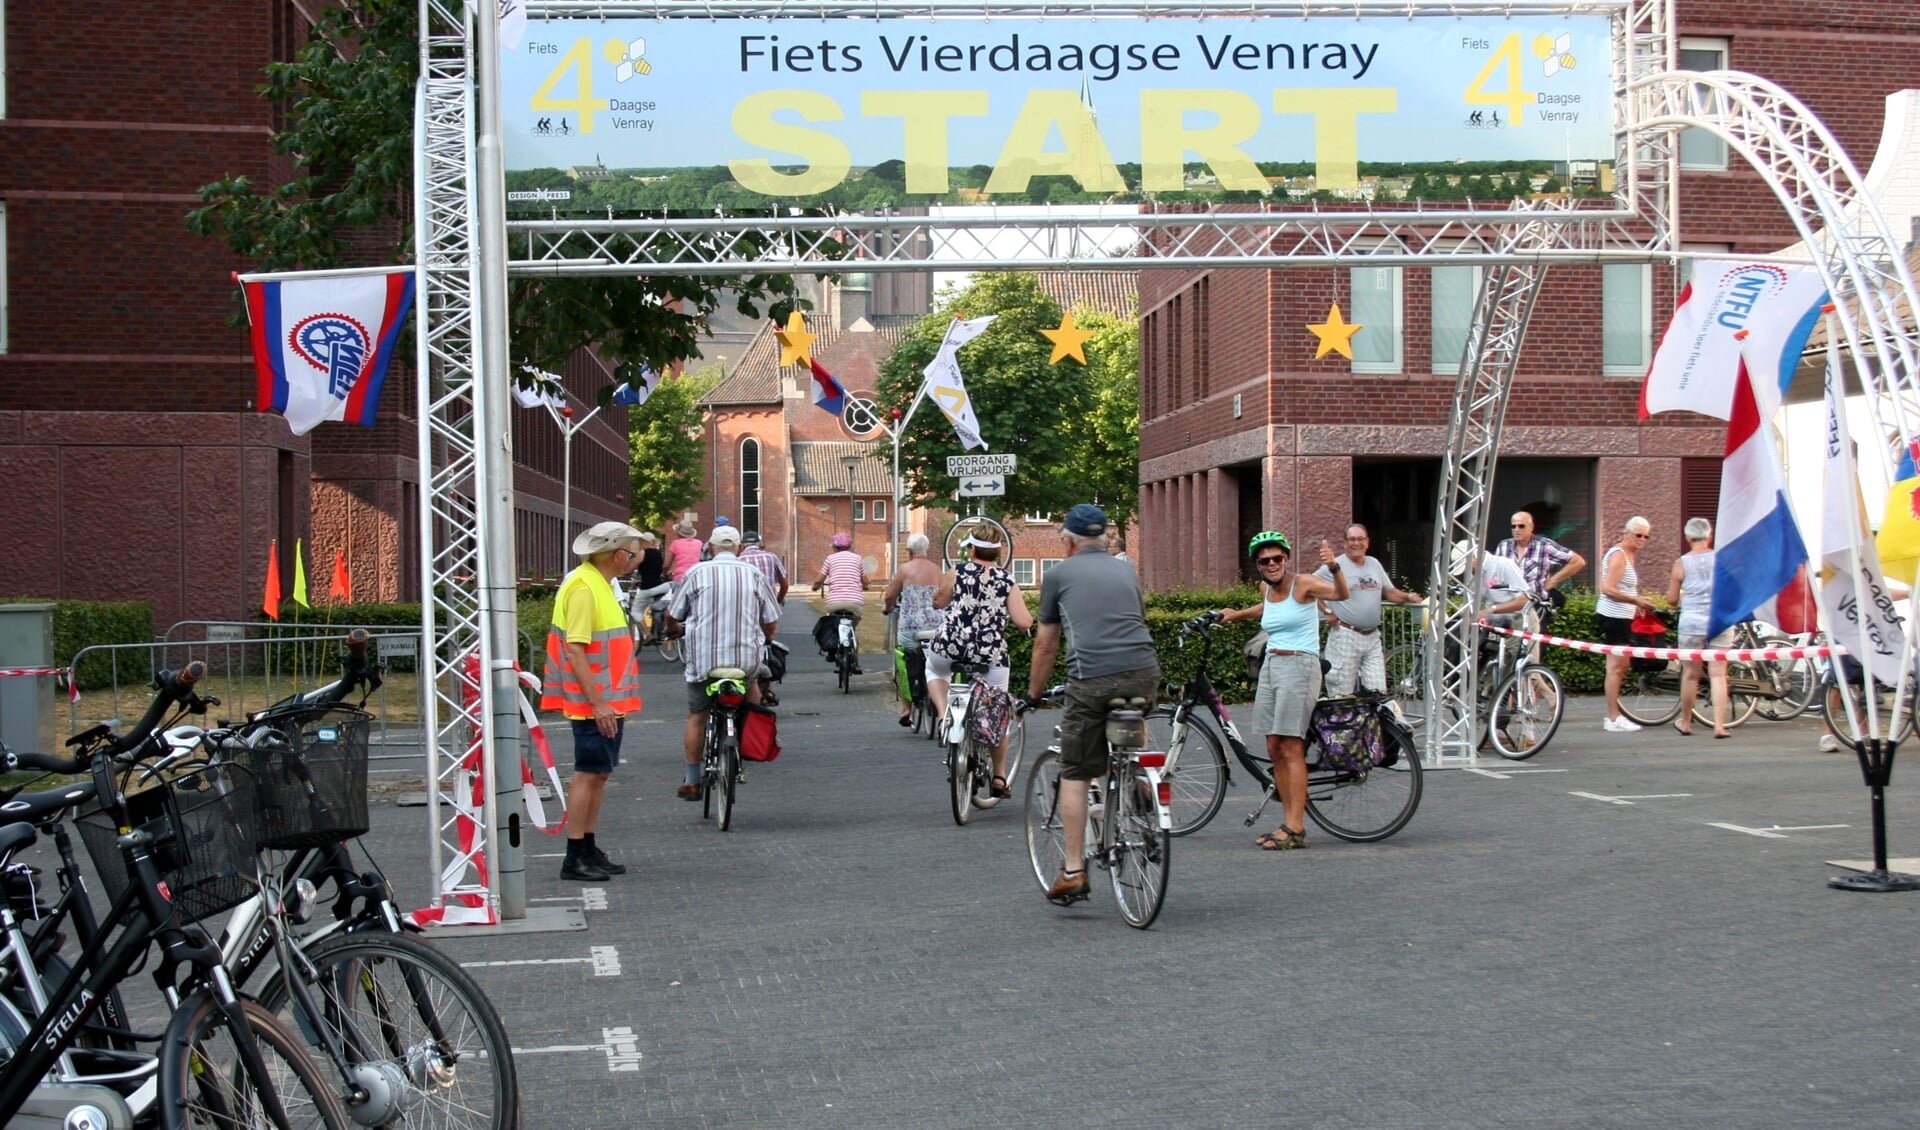 De Venrayse fietsvierdaagse vindt dit jaar binnen de coronarichtlijnen plaats van 20 t/m 23 juli. 